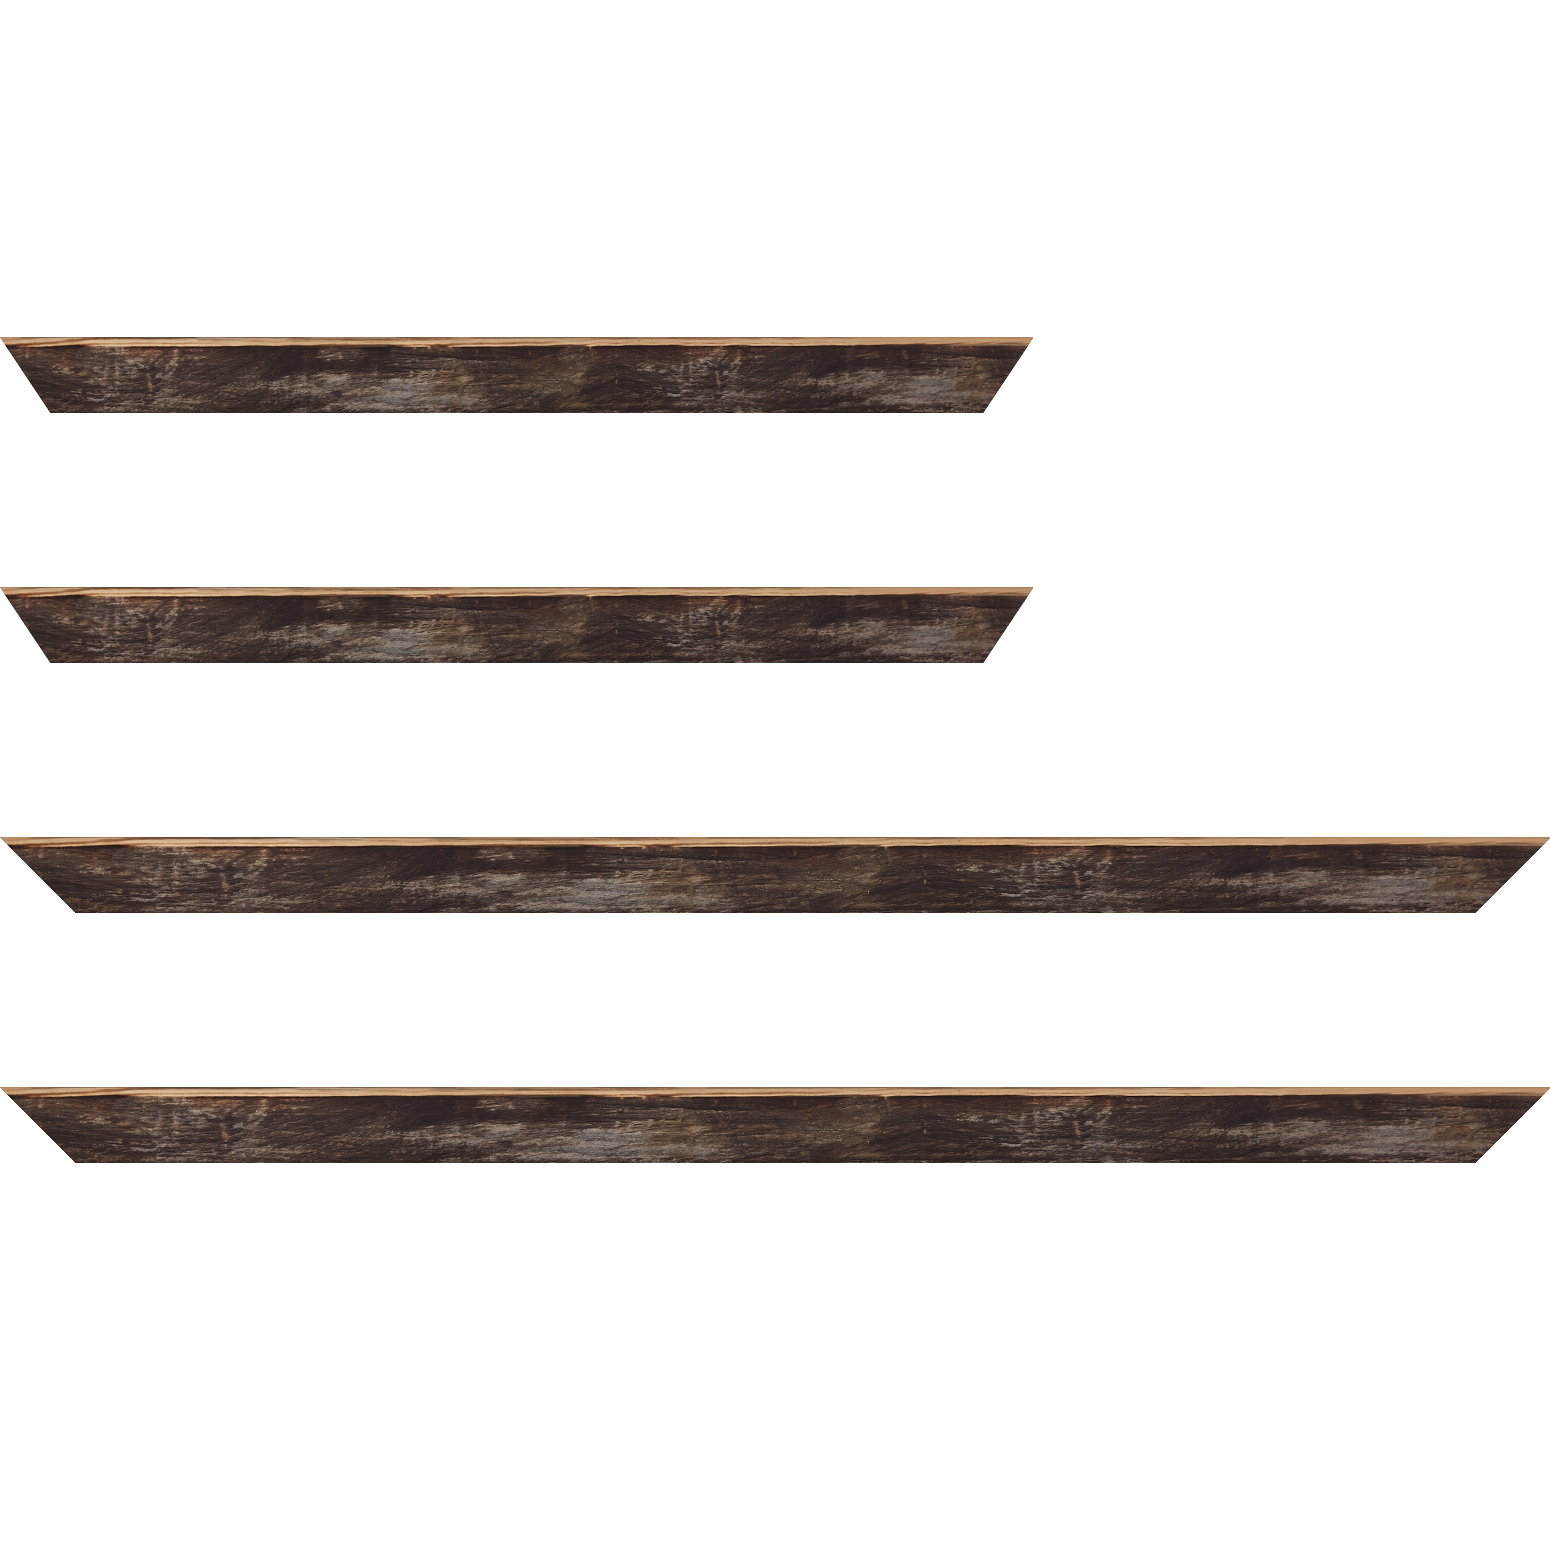 Baguette bois profil arrondi en pente plongeant largeur 2.4cm couleur noir ébène effet ressuyé, angle du cadre extérieur filet naturel - 30x60